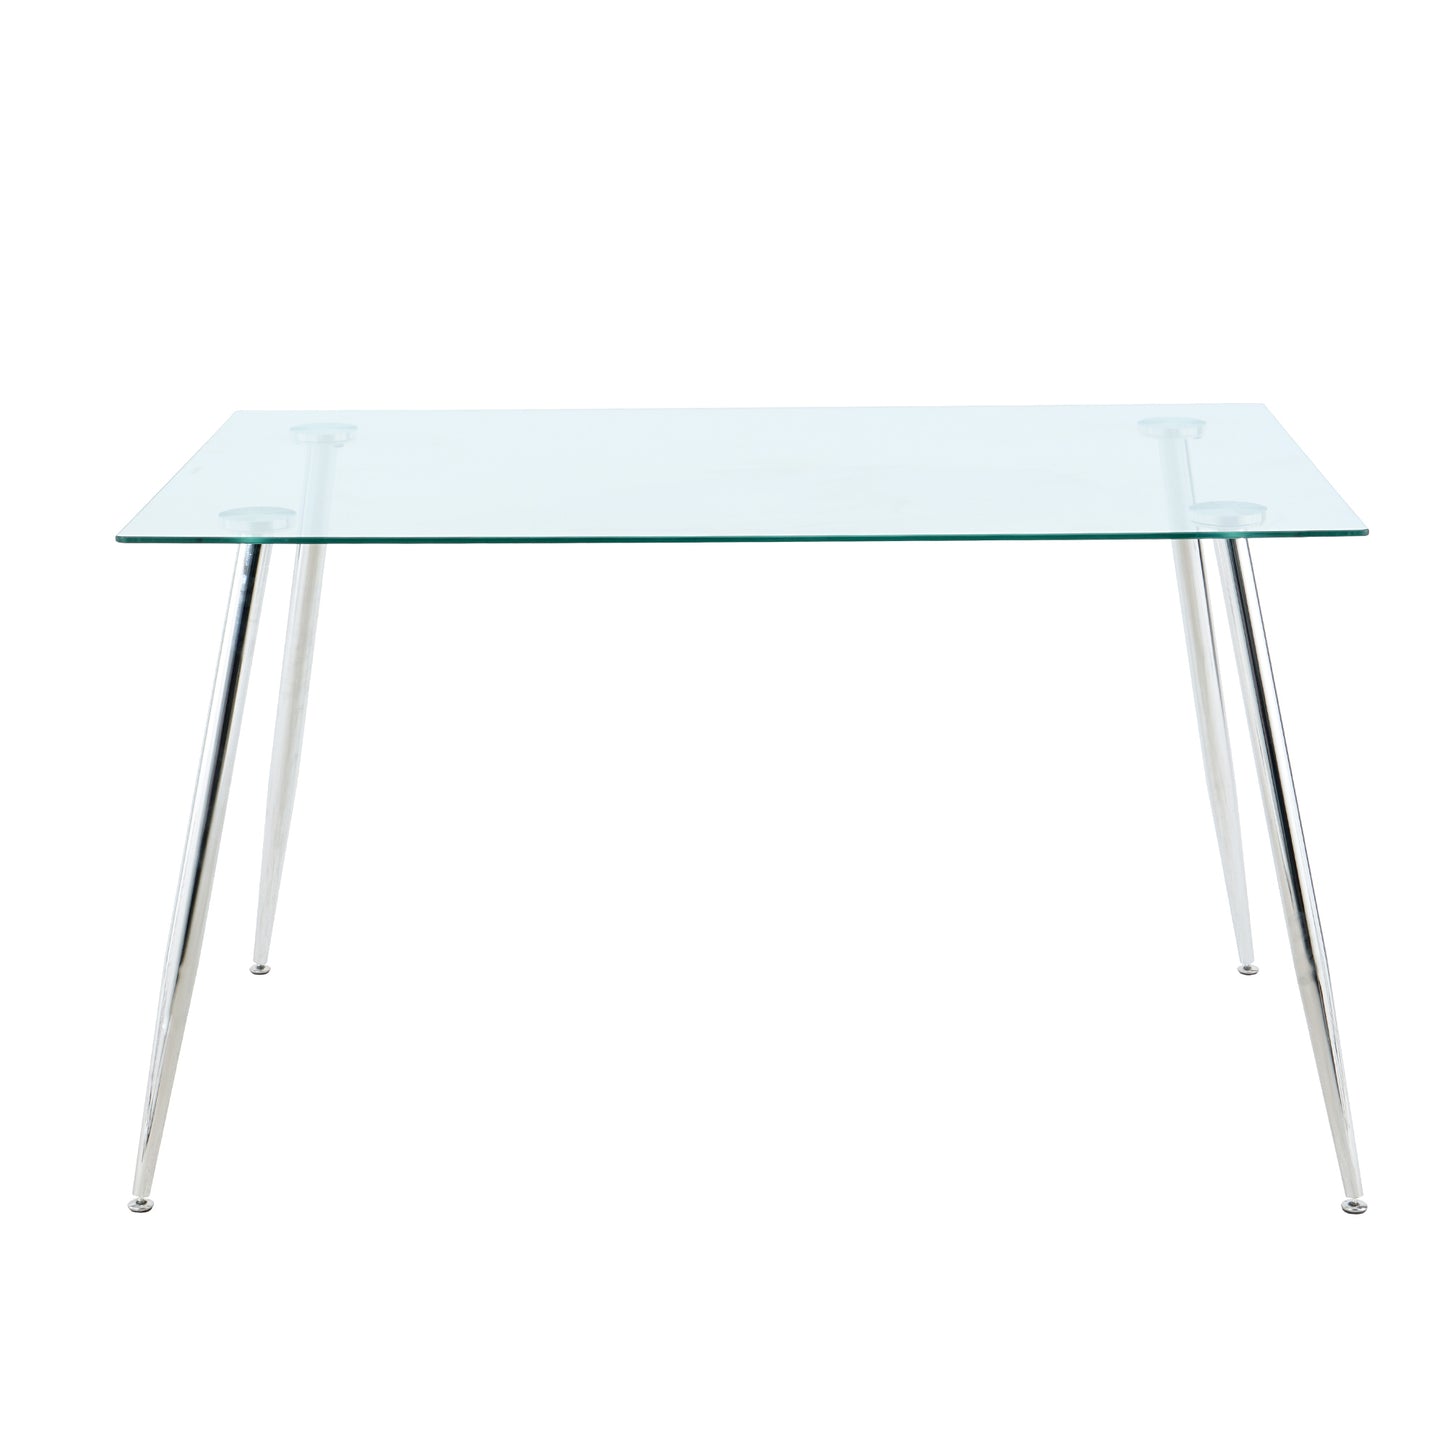 Modern Kitchen Glass dining table 51" Rectangular  Tempered Glass Table top,Clear Dining Table Metal Legs, Chrome legs(set of 1)